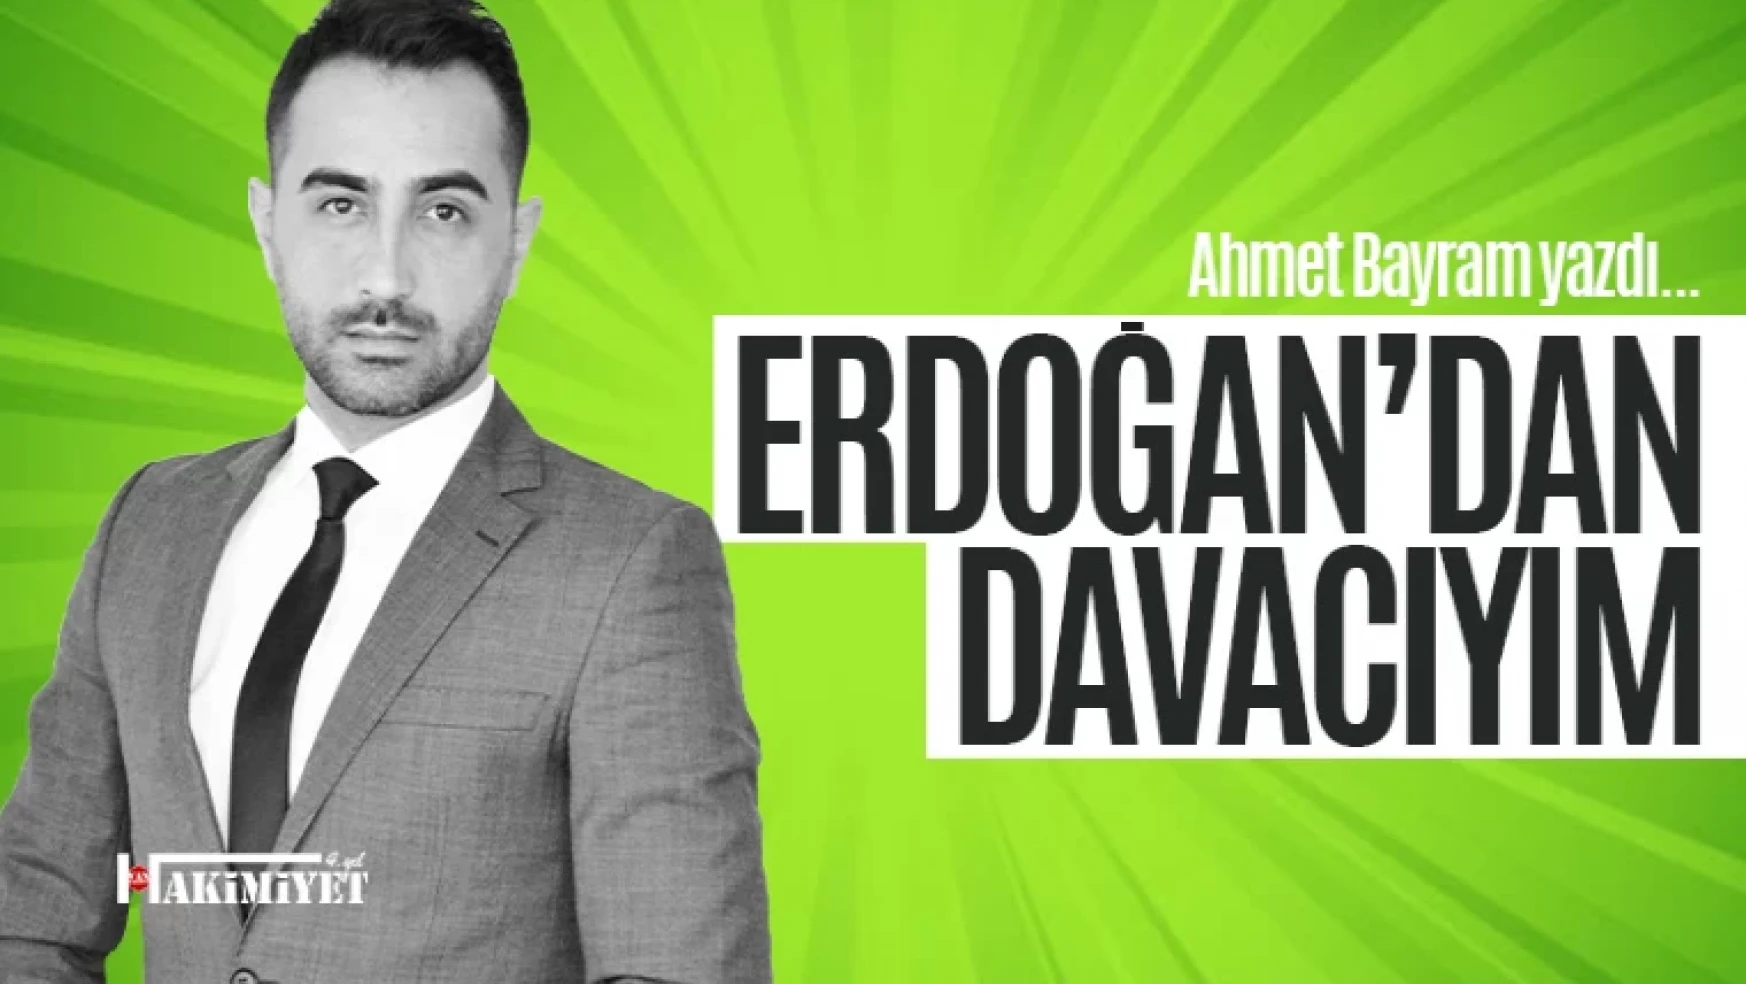 Erdoğan'dan davacıyım! Ahmet Bayram yazdı...